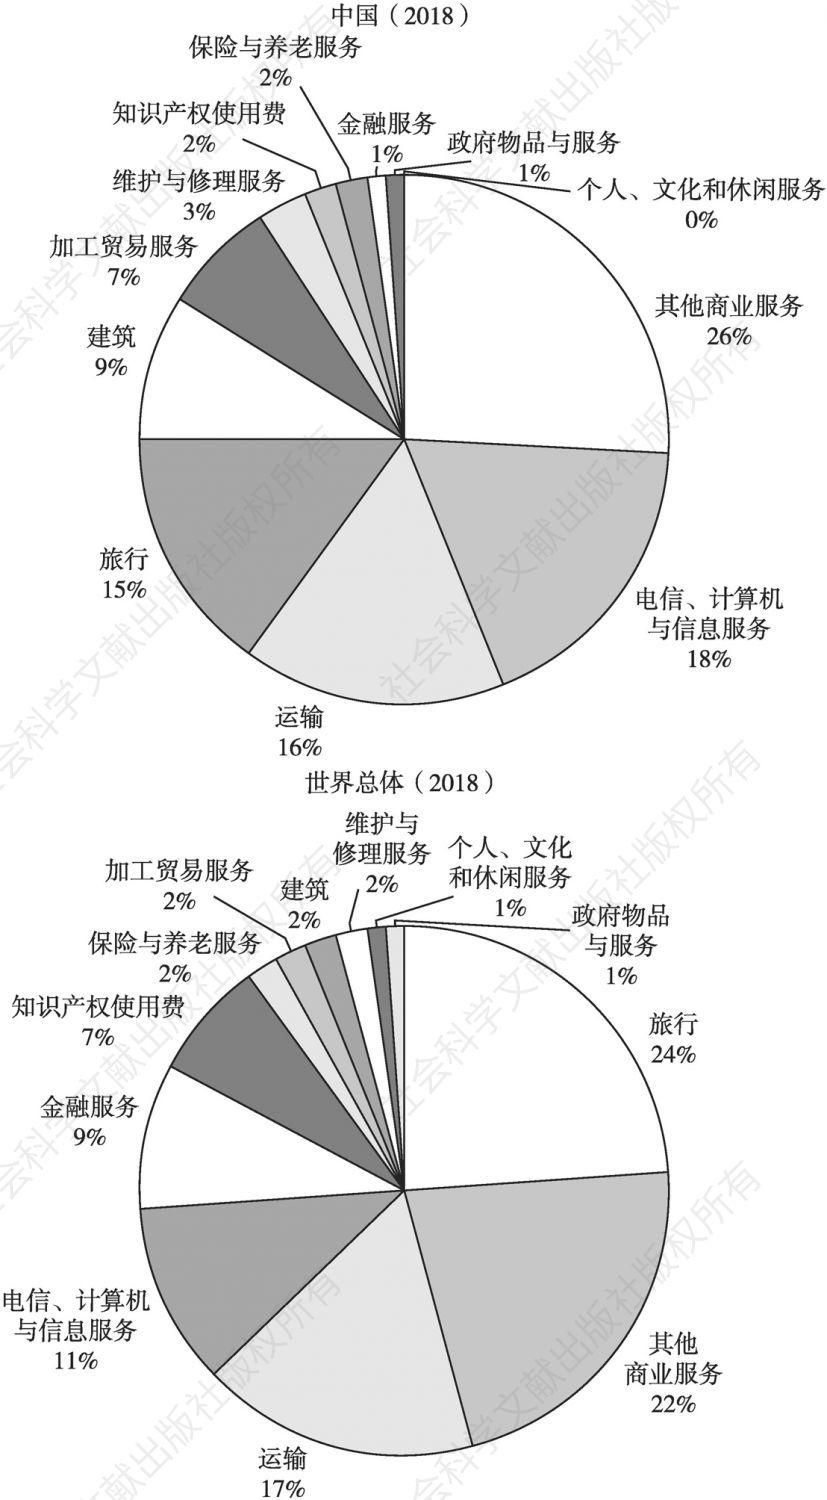 图4 2018年中国与世界总体服务业出口产业分布